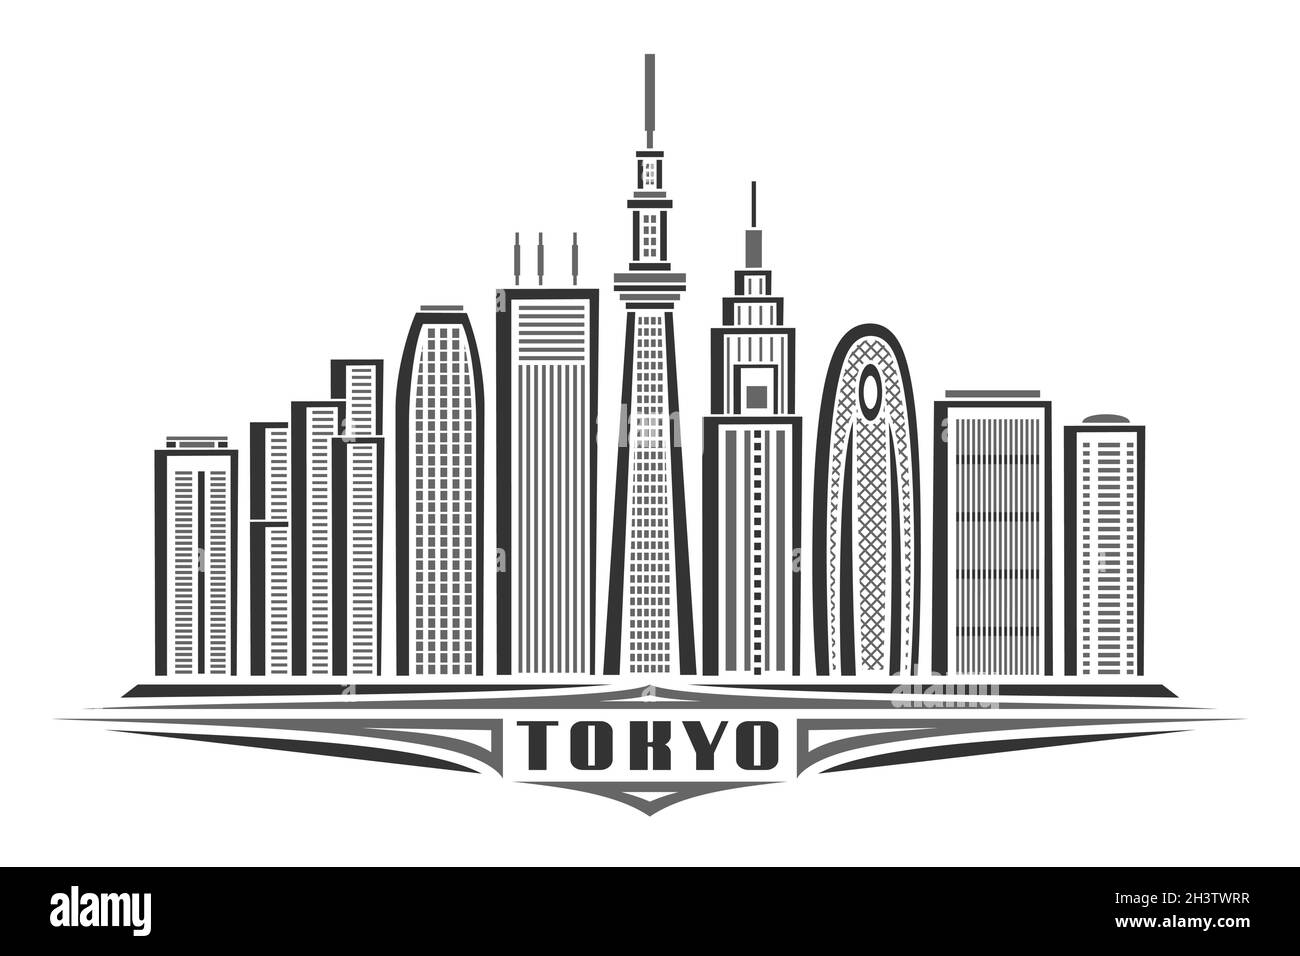 Illustrazione vettoriale di Tokyo, poster orizzontale monocromatico con design lineare famoso paesaggio cittadino di tokyo, concetto artistico urbano con decorazione unica Illustrazione Vettoriale